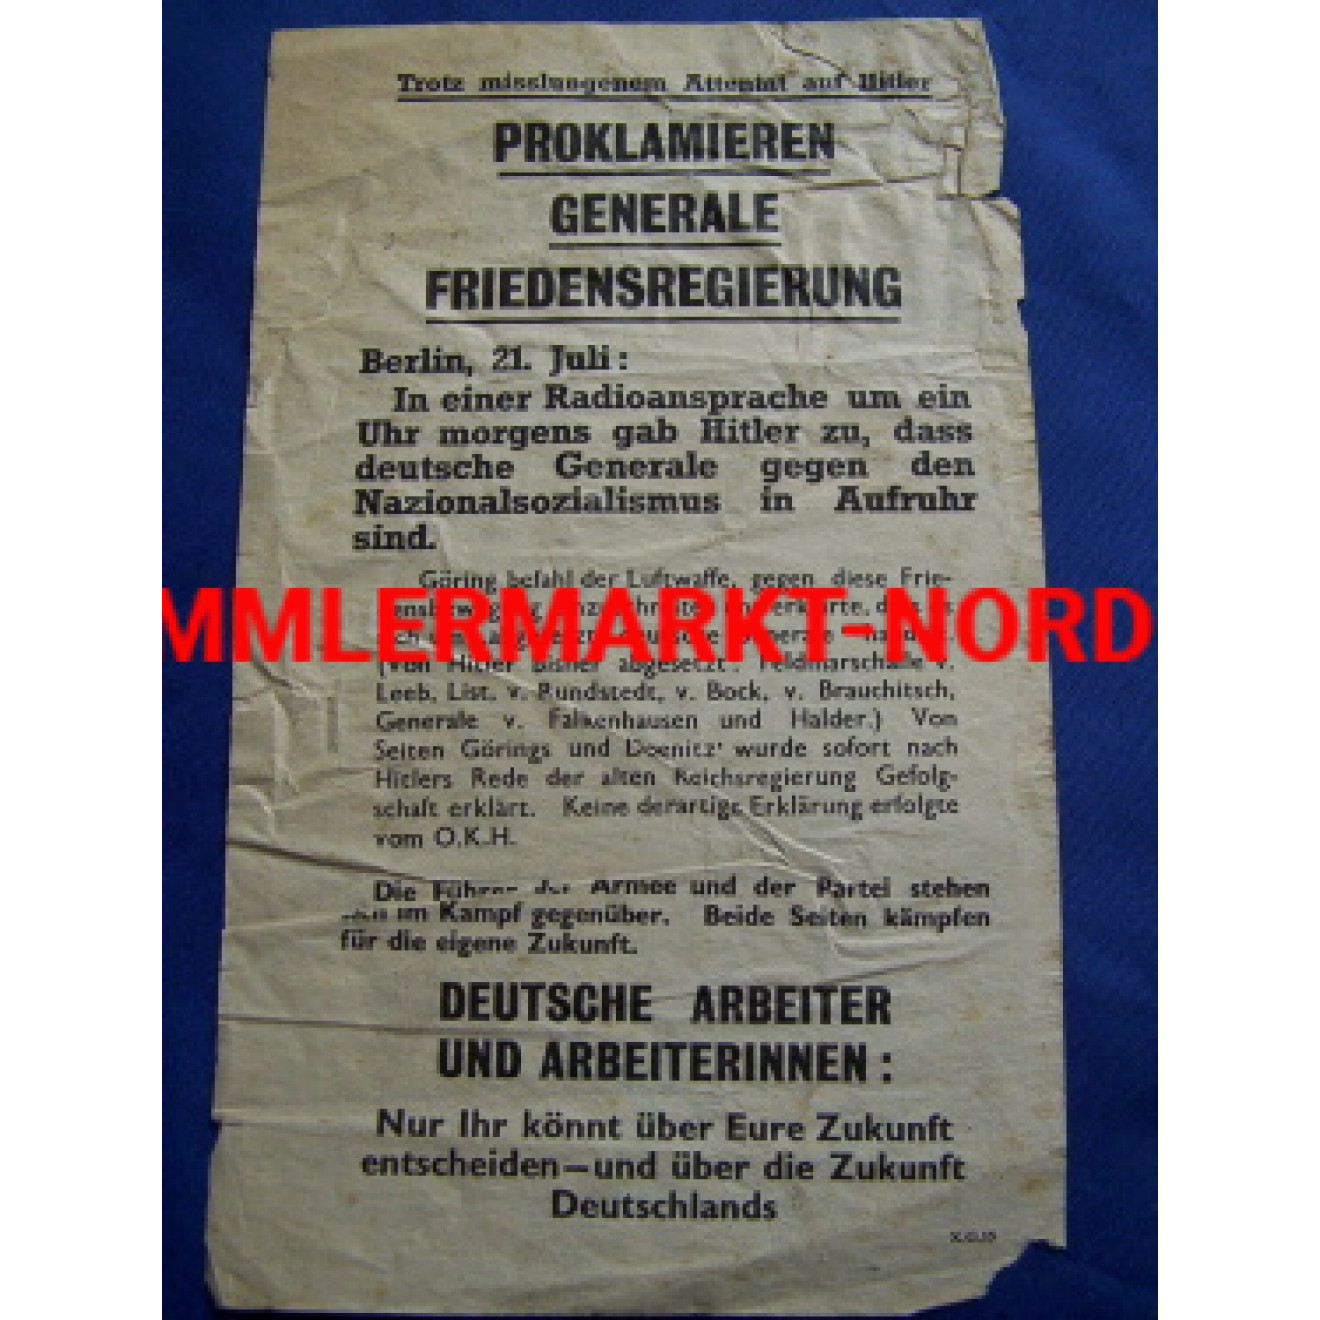 Allied handbill